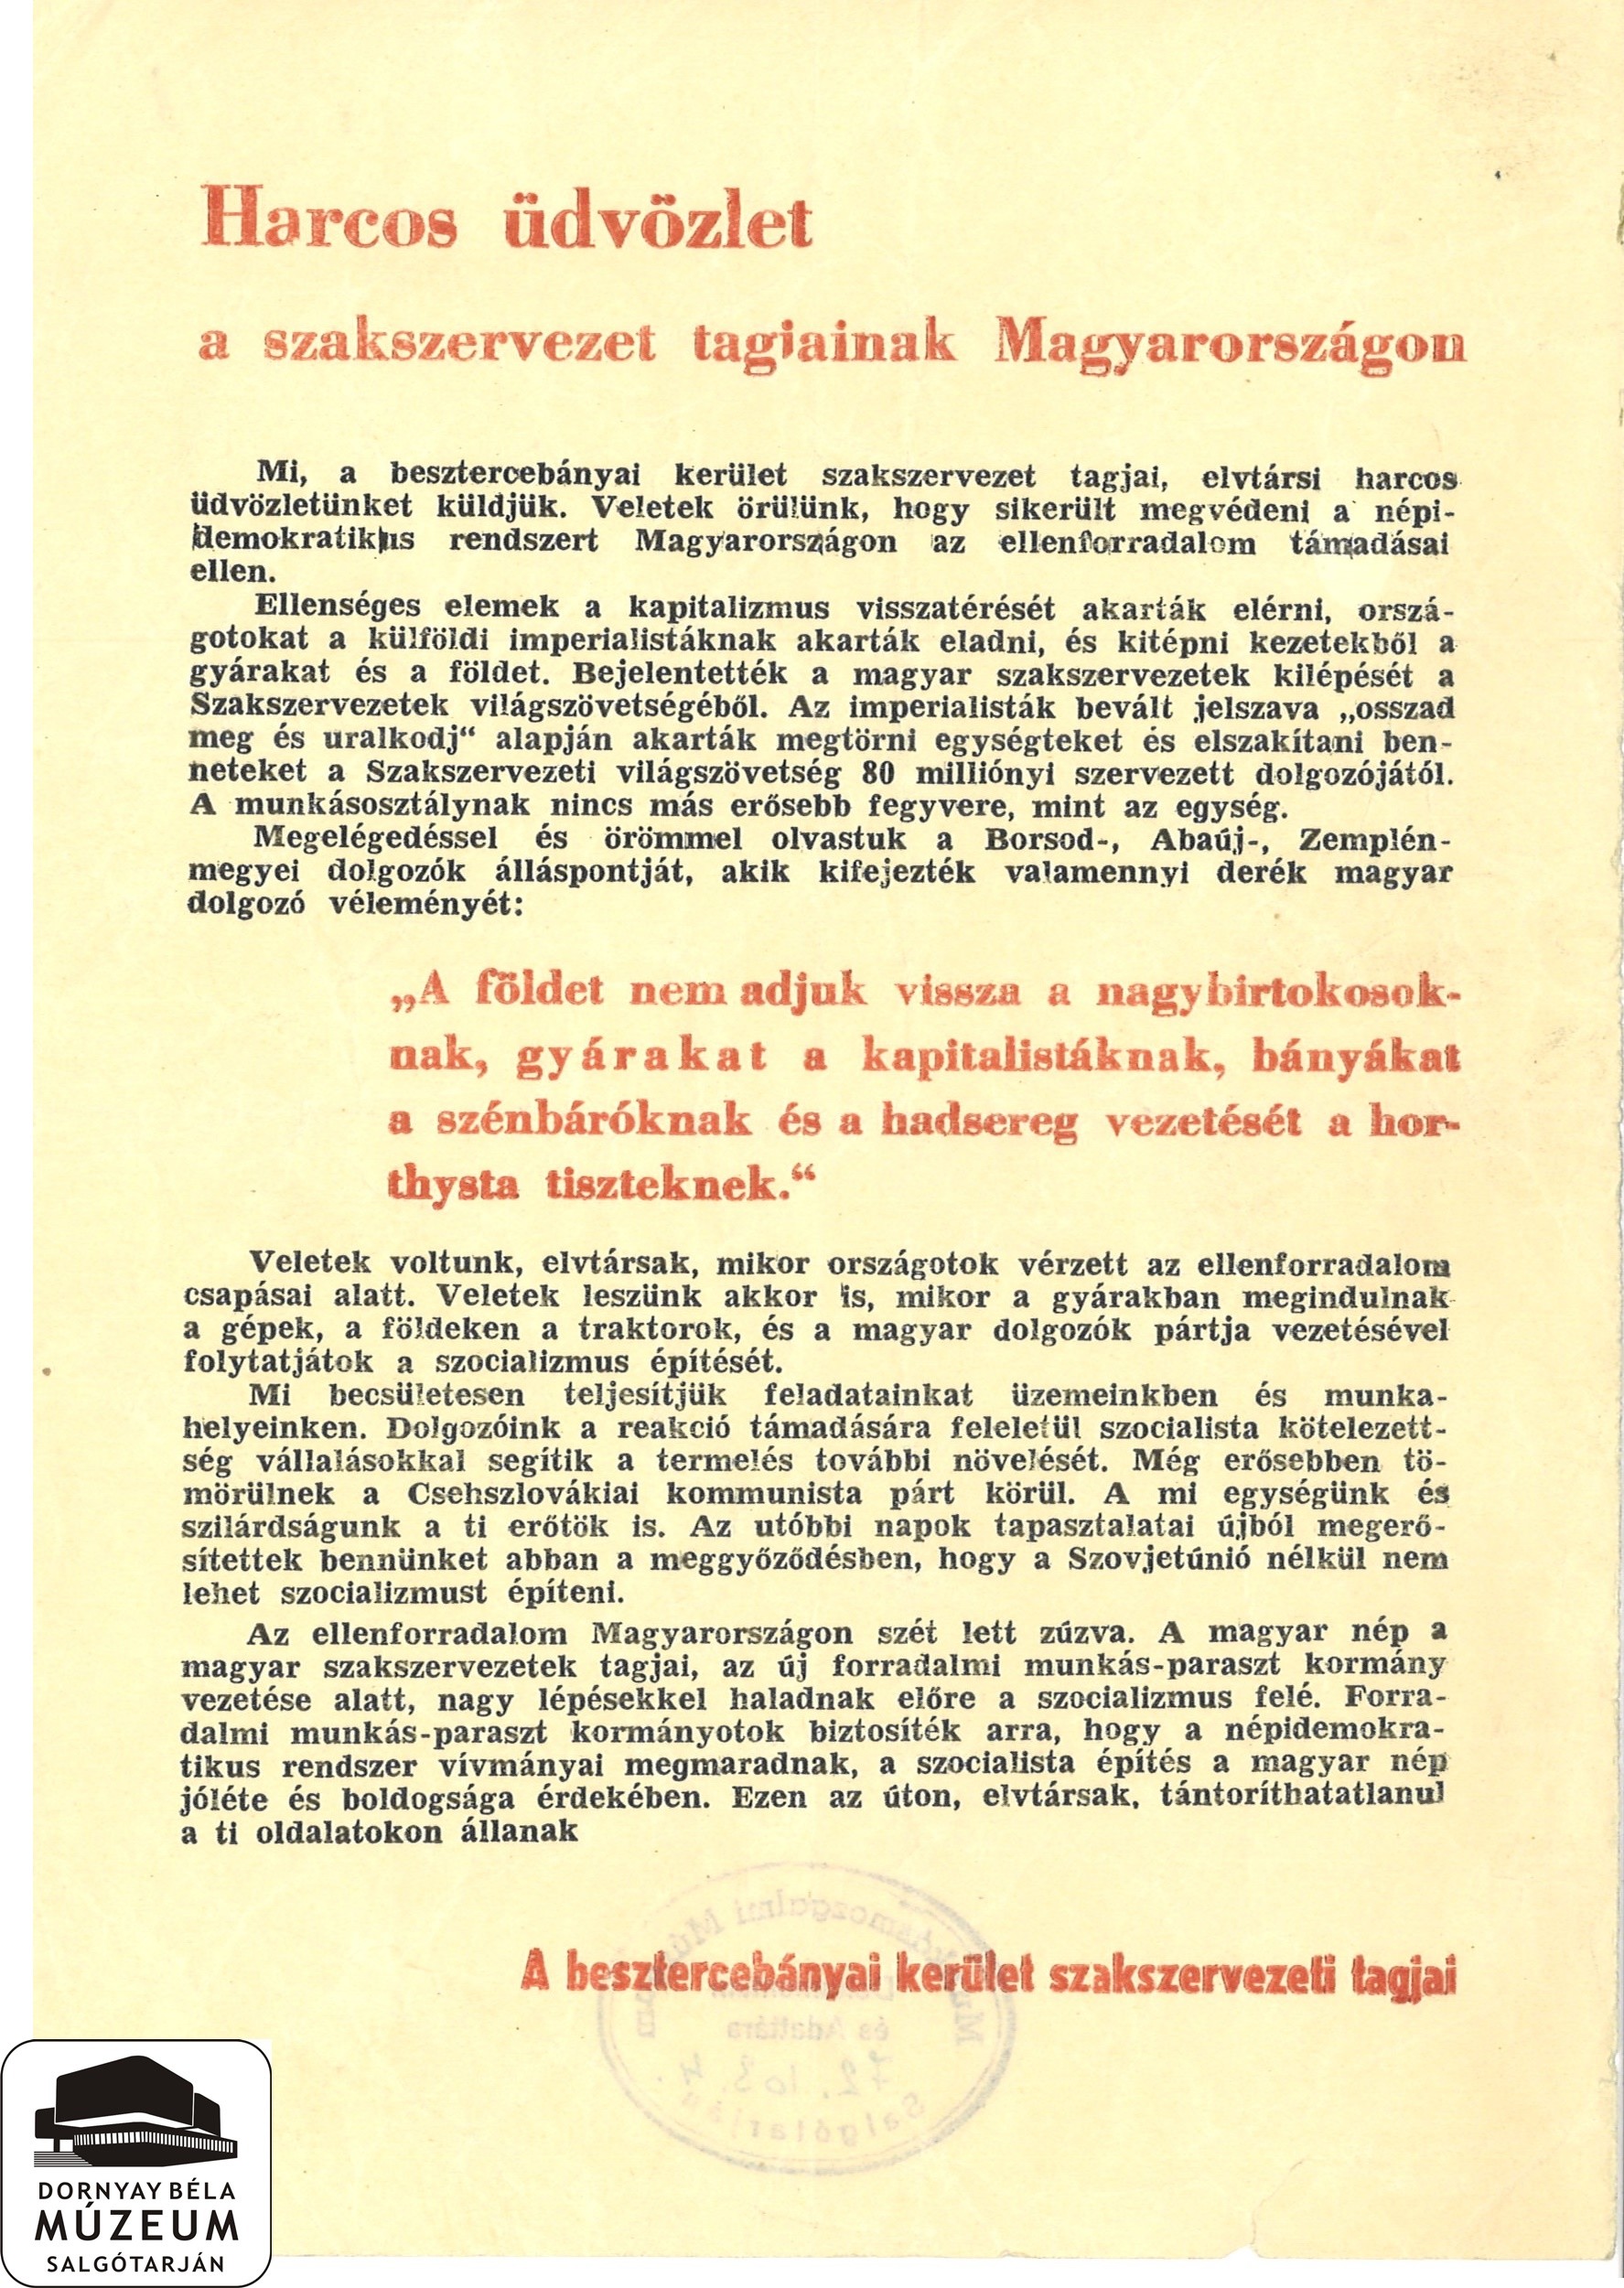 A besztercebányai szakszervezeti tagok elítélik az ellenforradalmat. (Dornyay Béla Múzeum, Salgótarján CC BY-NC-SA)